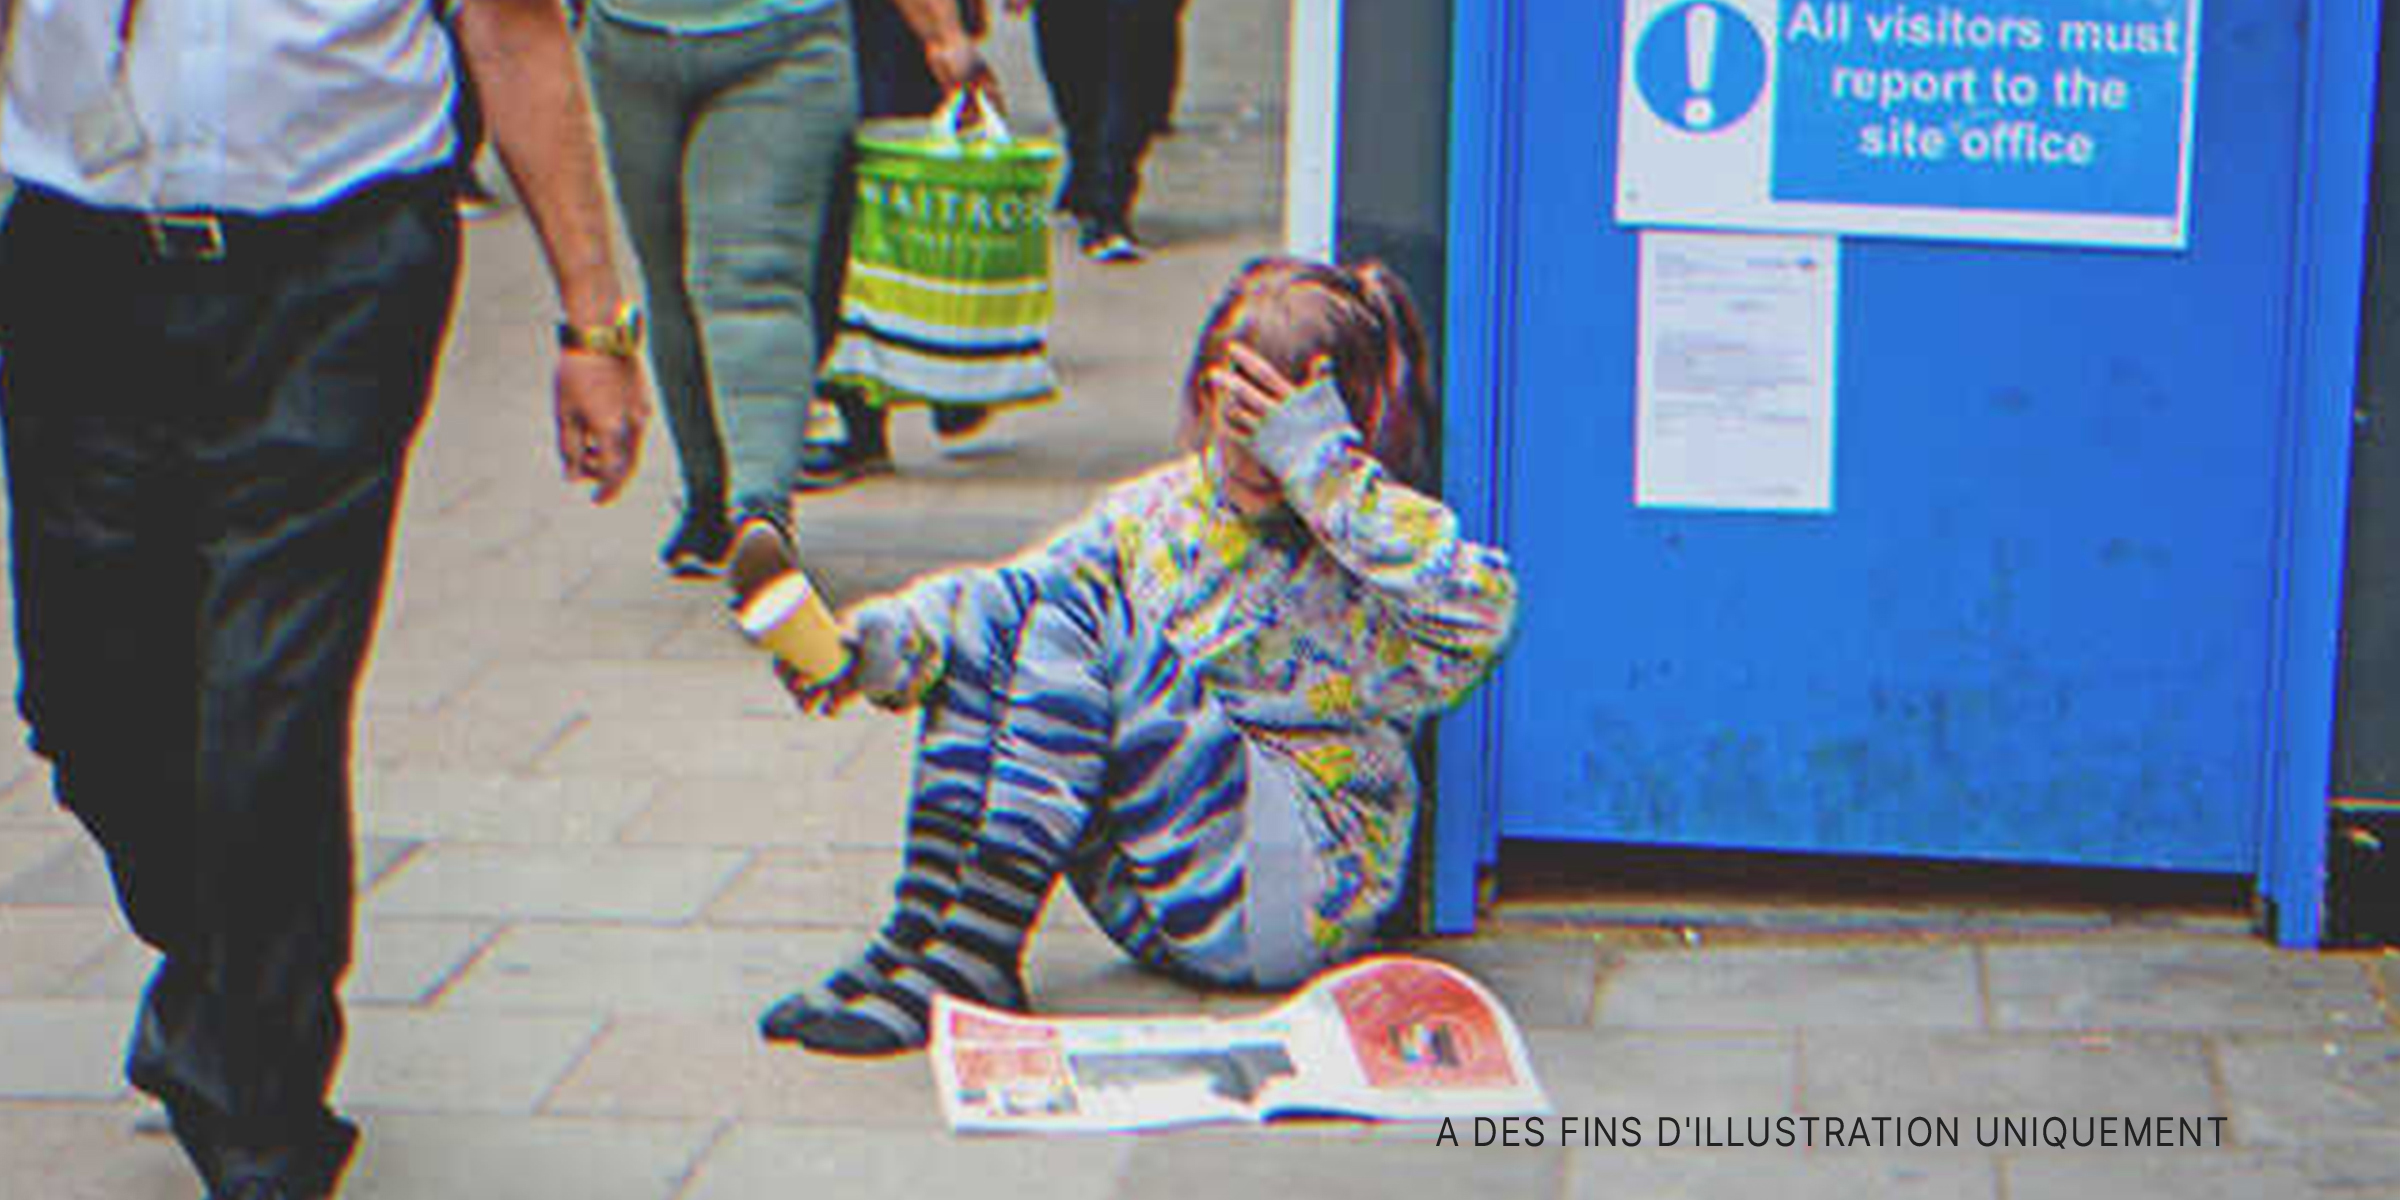 Une petite fille mendiant dans la rue. | Source : Shutterstock